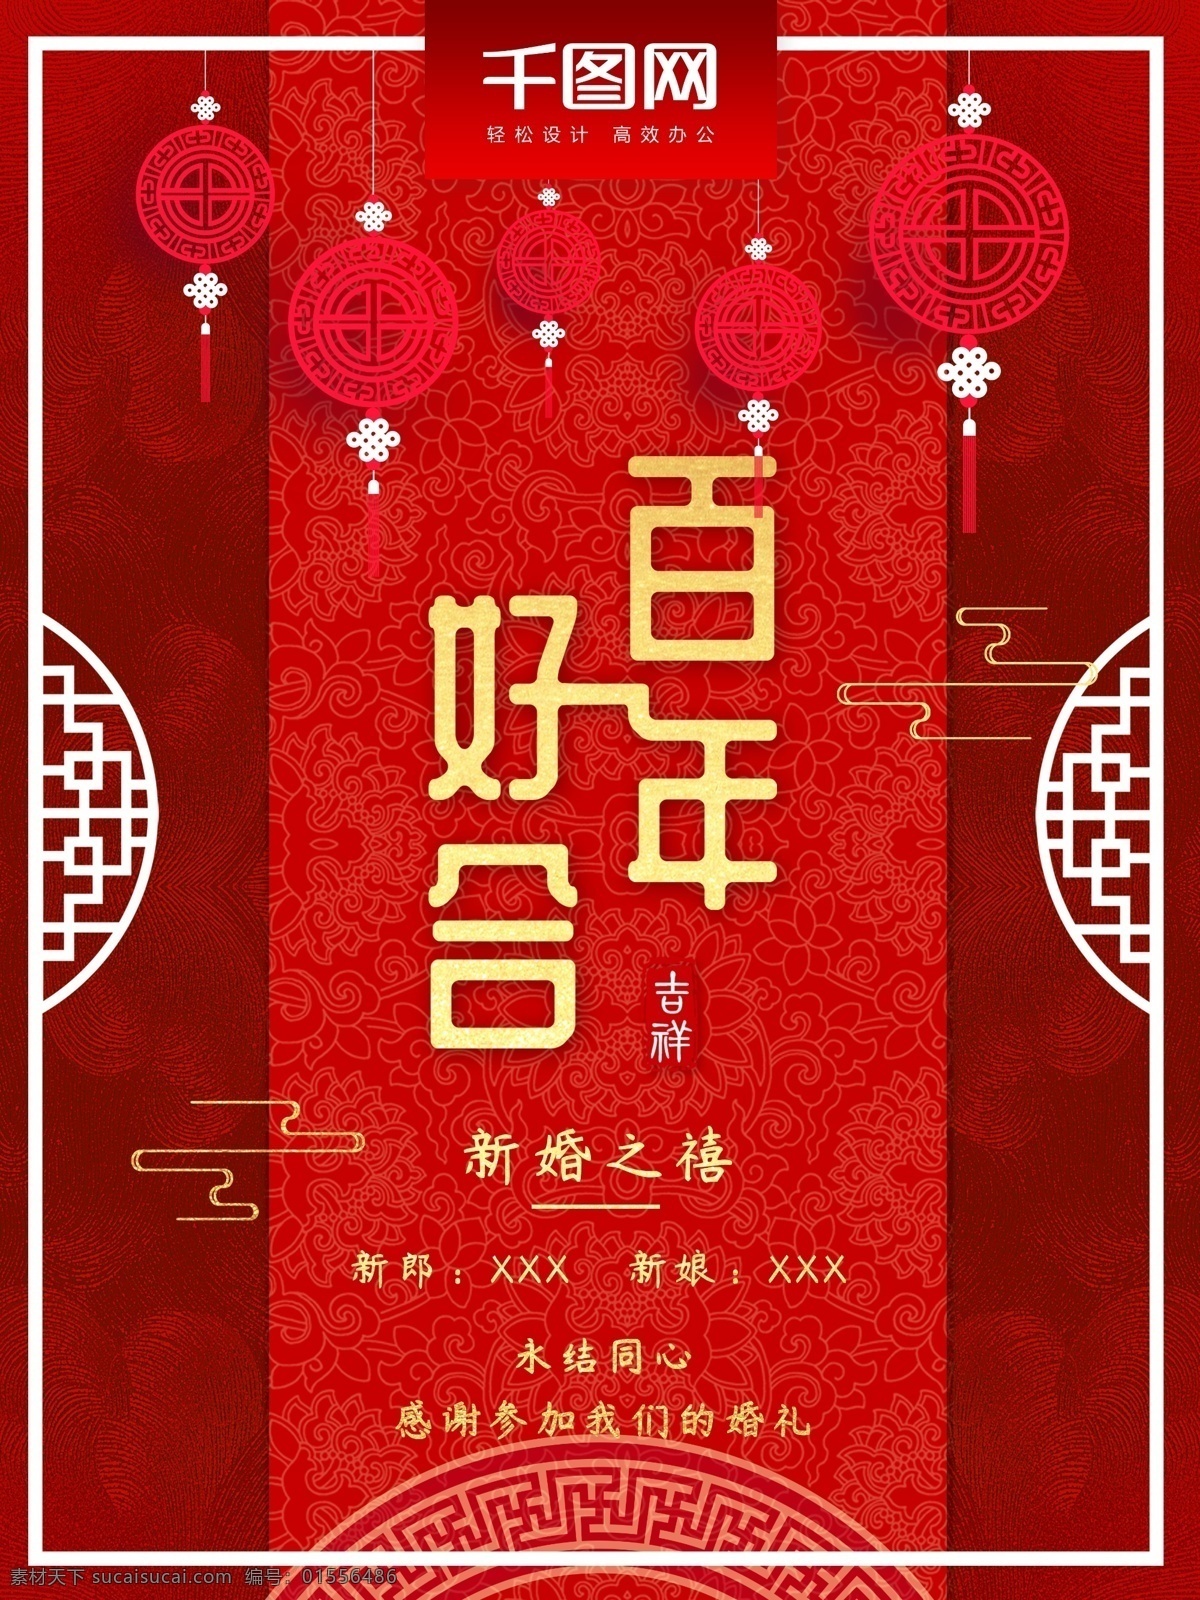 中式 浪漫婚礼 海报 中国风 喜庆 红色 婚礼 婚礼海报 中式婚礼 百年好合